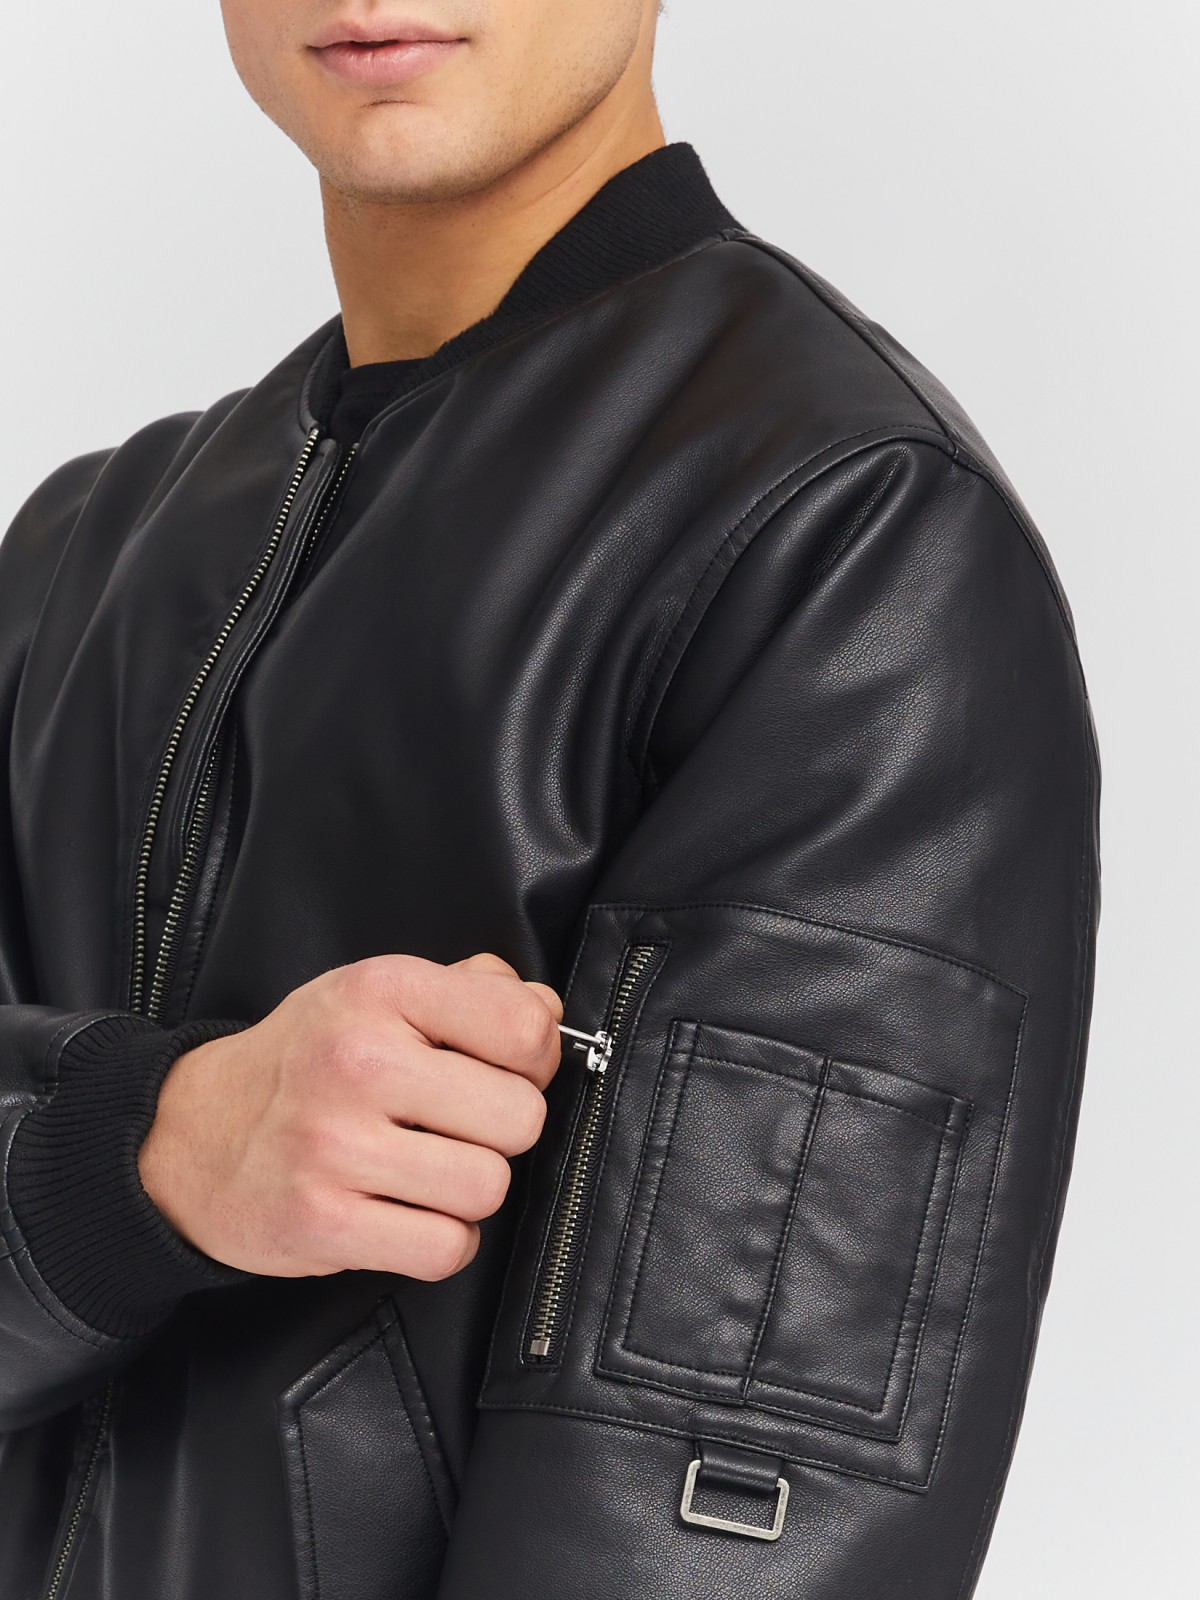 Утеплённая куртка-бомбер из экокожи на синтепоне zolla 014135150134, цвет черный, размер M - фото 6